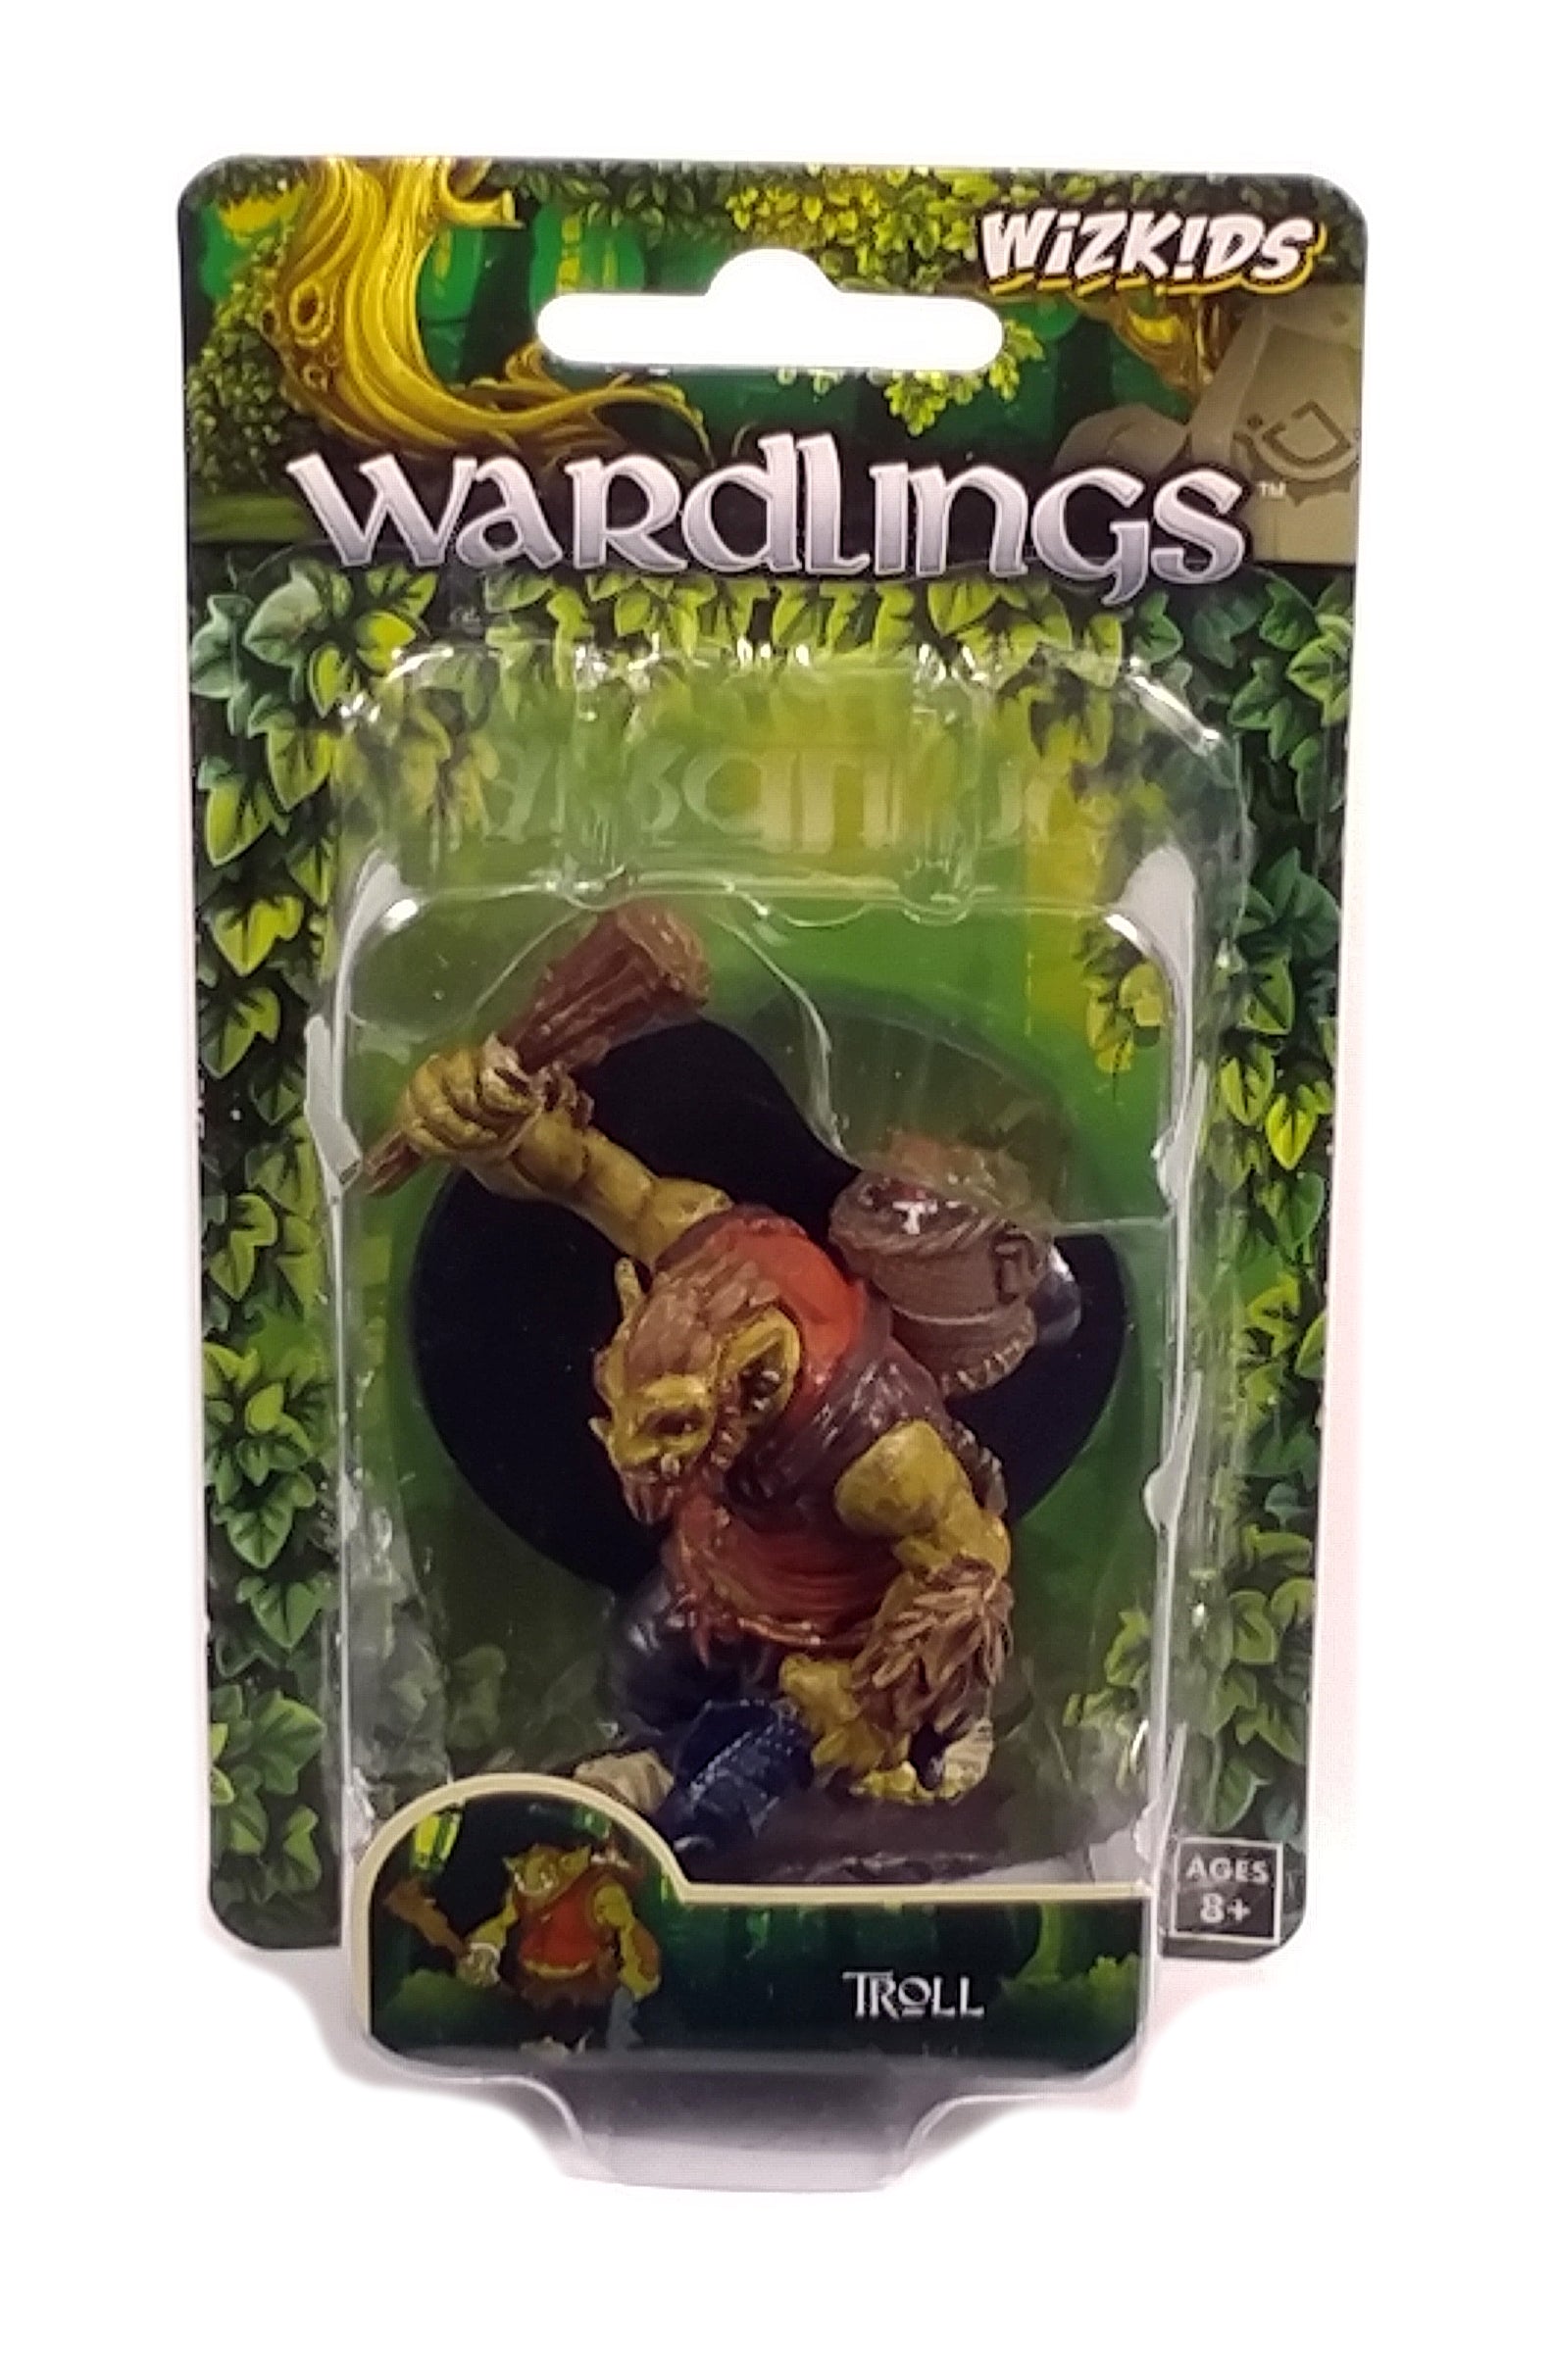 Wardlings Troll Figure